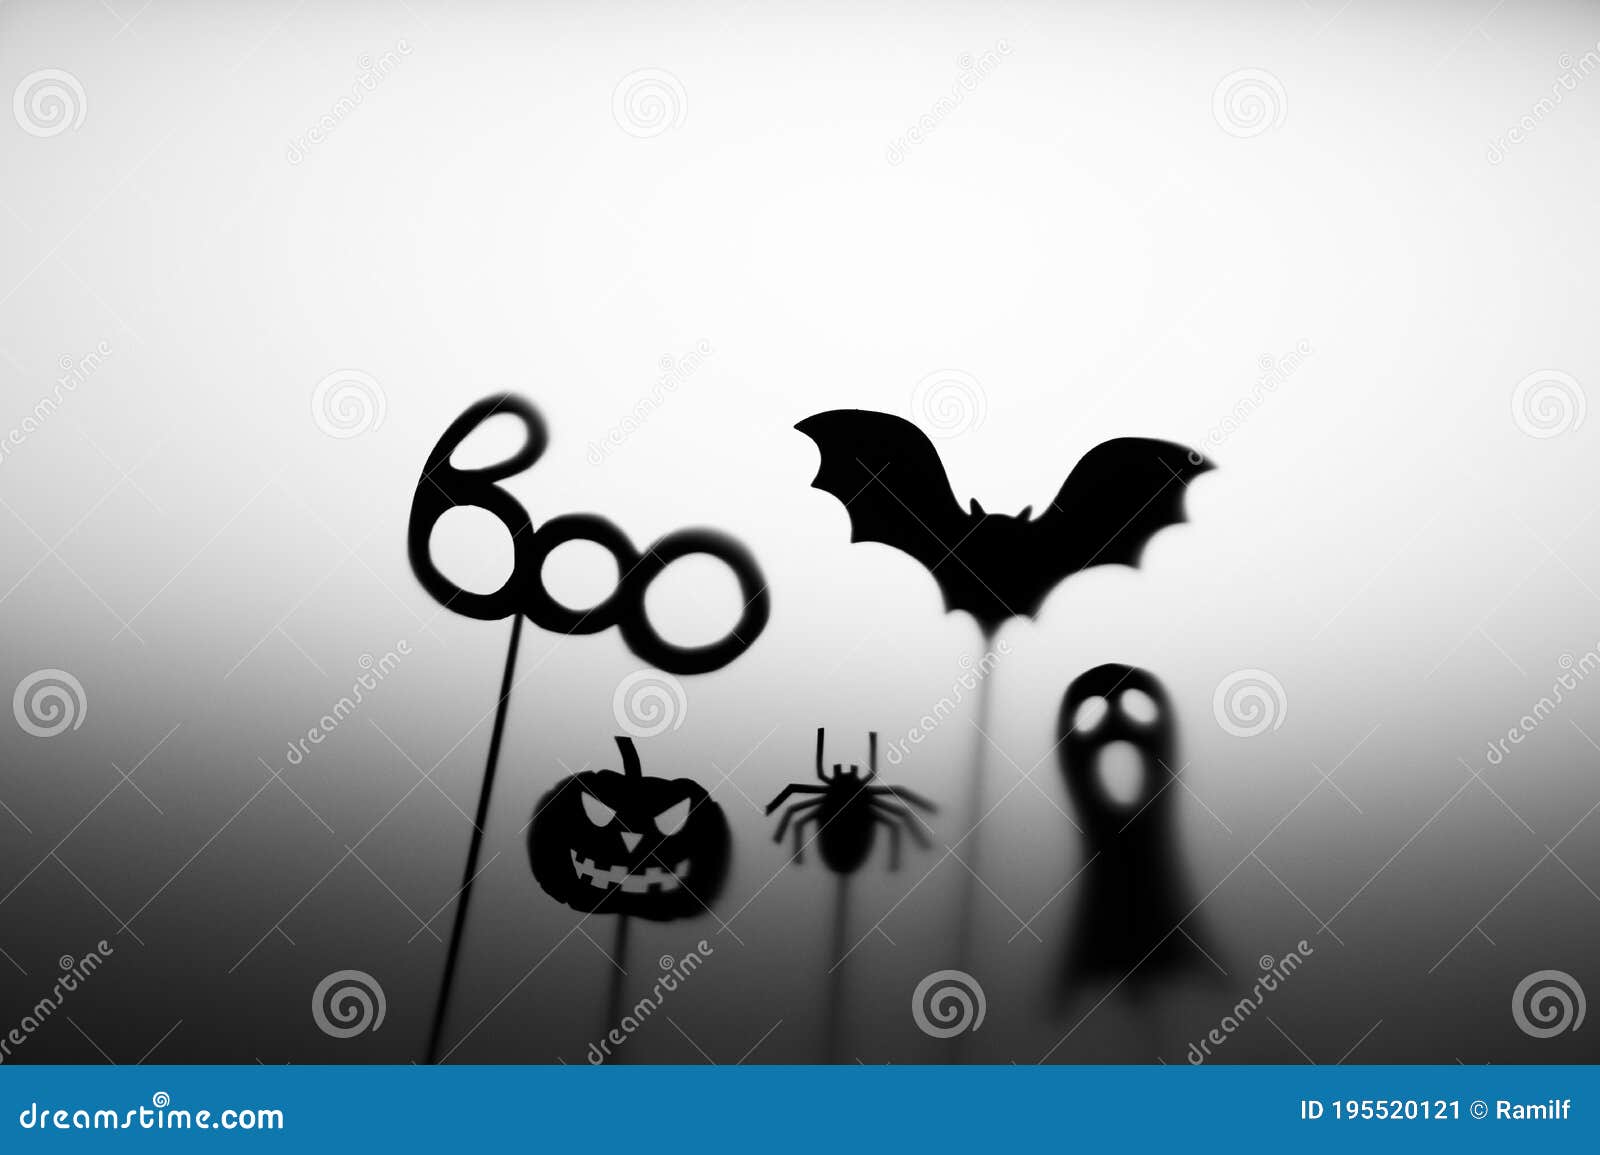 Bruxas, Abóboras, morcegos, fantasmas, aranhas e muitos outras figuras  simbólicas aparec…